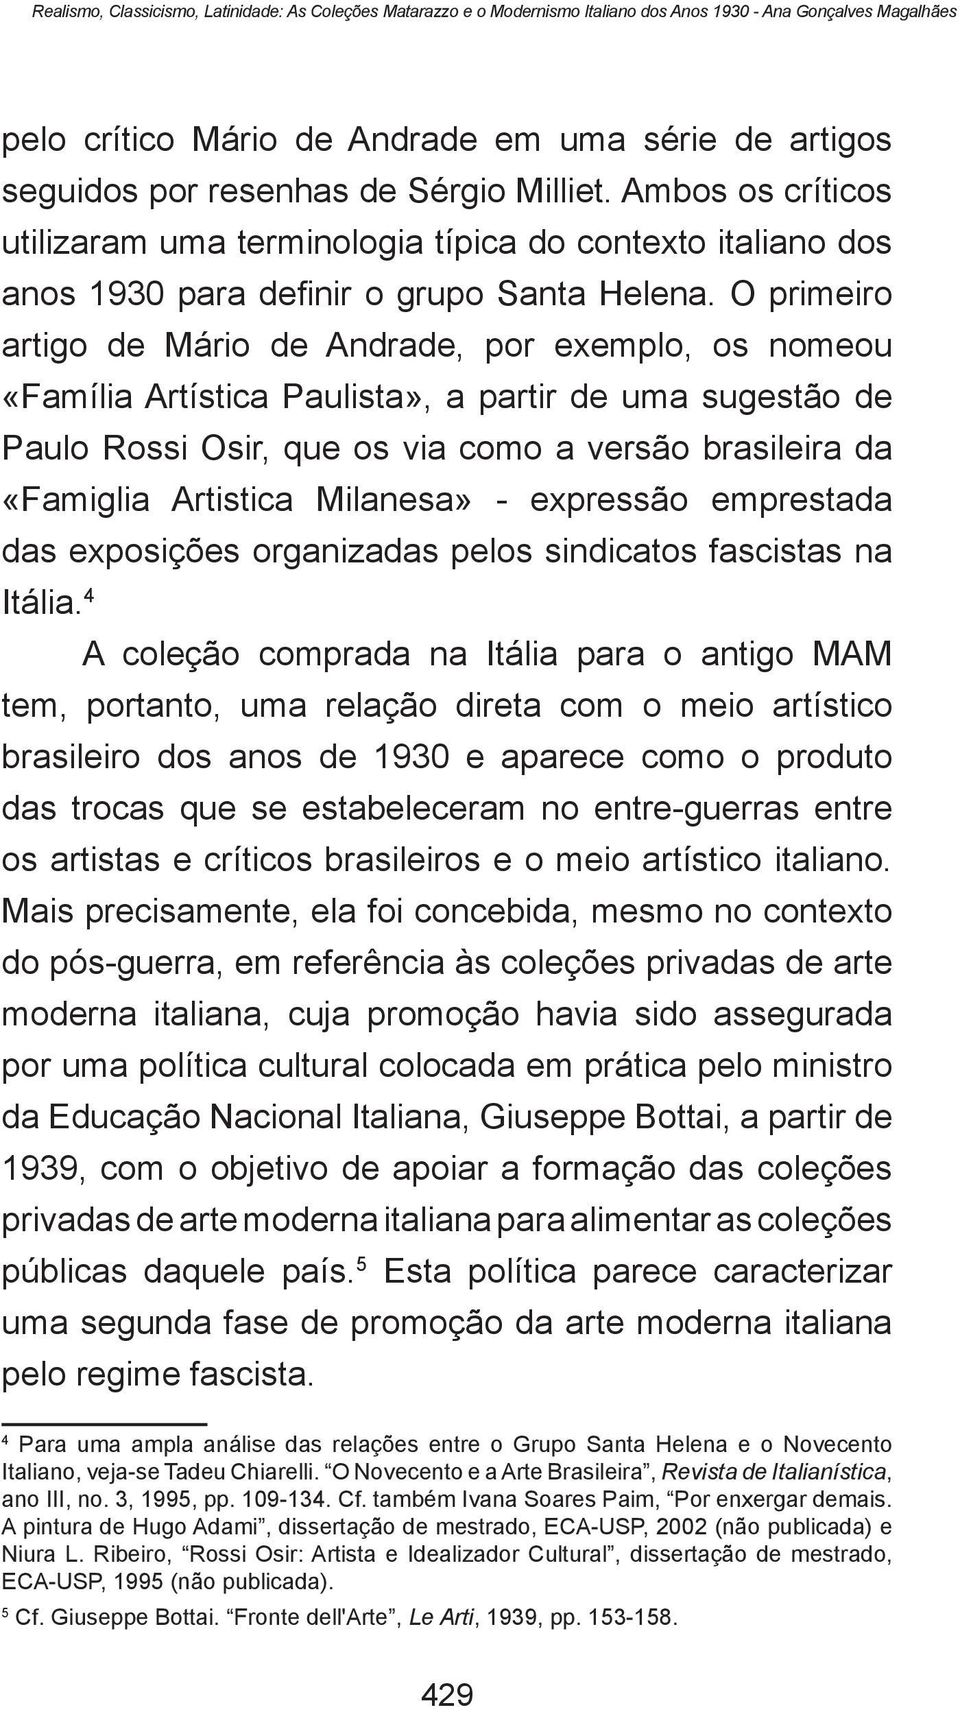 O primeiro artigo de Mário de Andrade, por exemplo, os nomeou «Família Artística Paulista», a partir de uma sugestão de Paulo Rossi Osir, que os via como a versão brasileira da «Famiglia Artistica